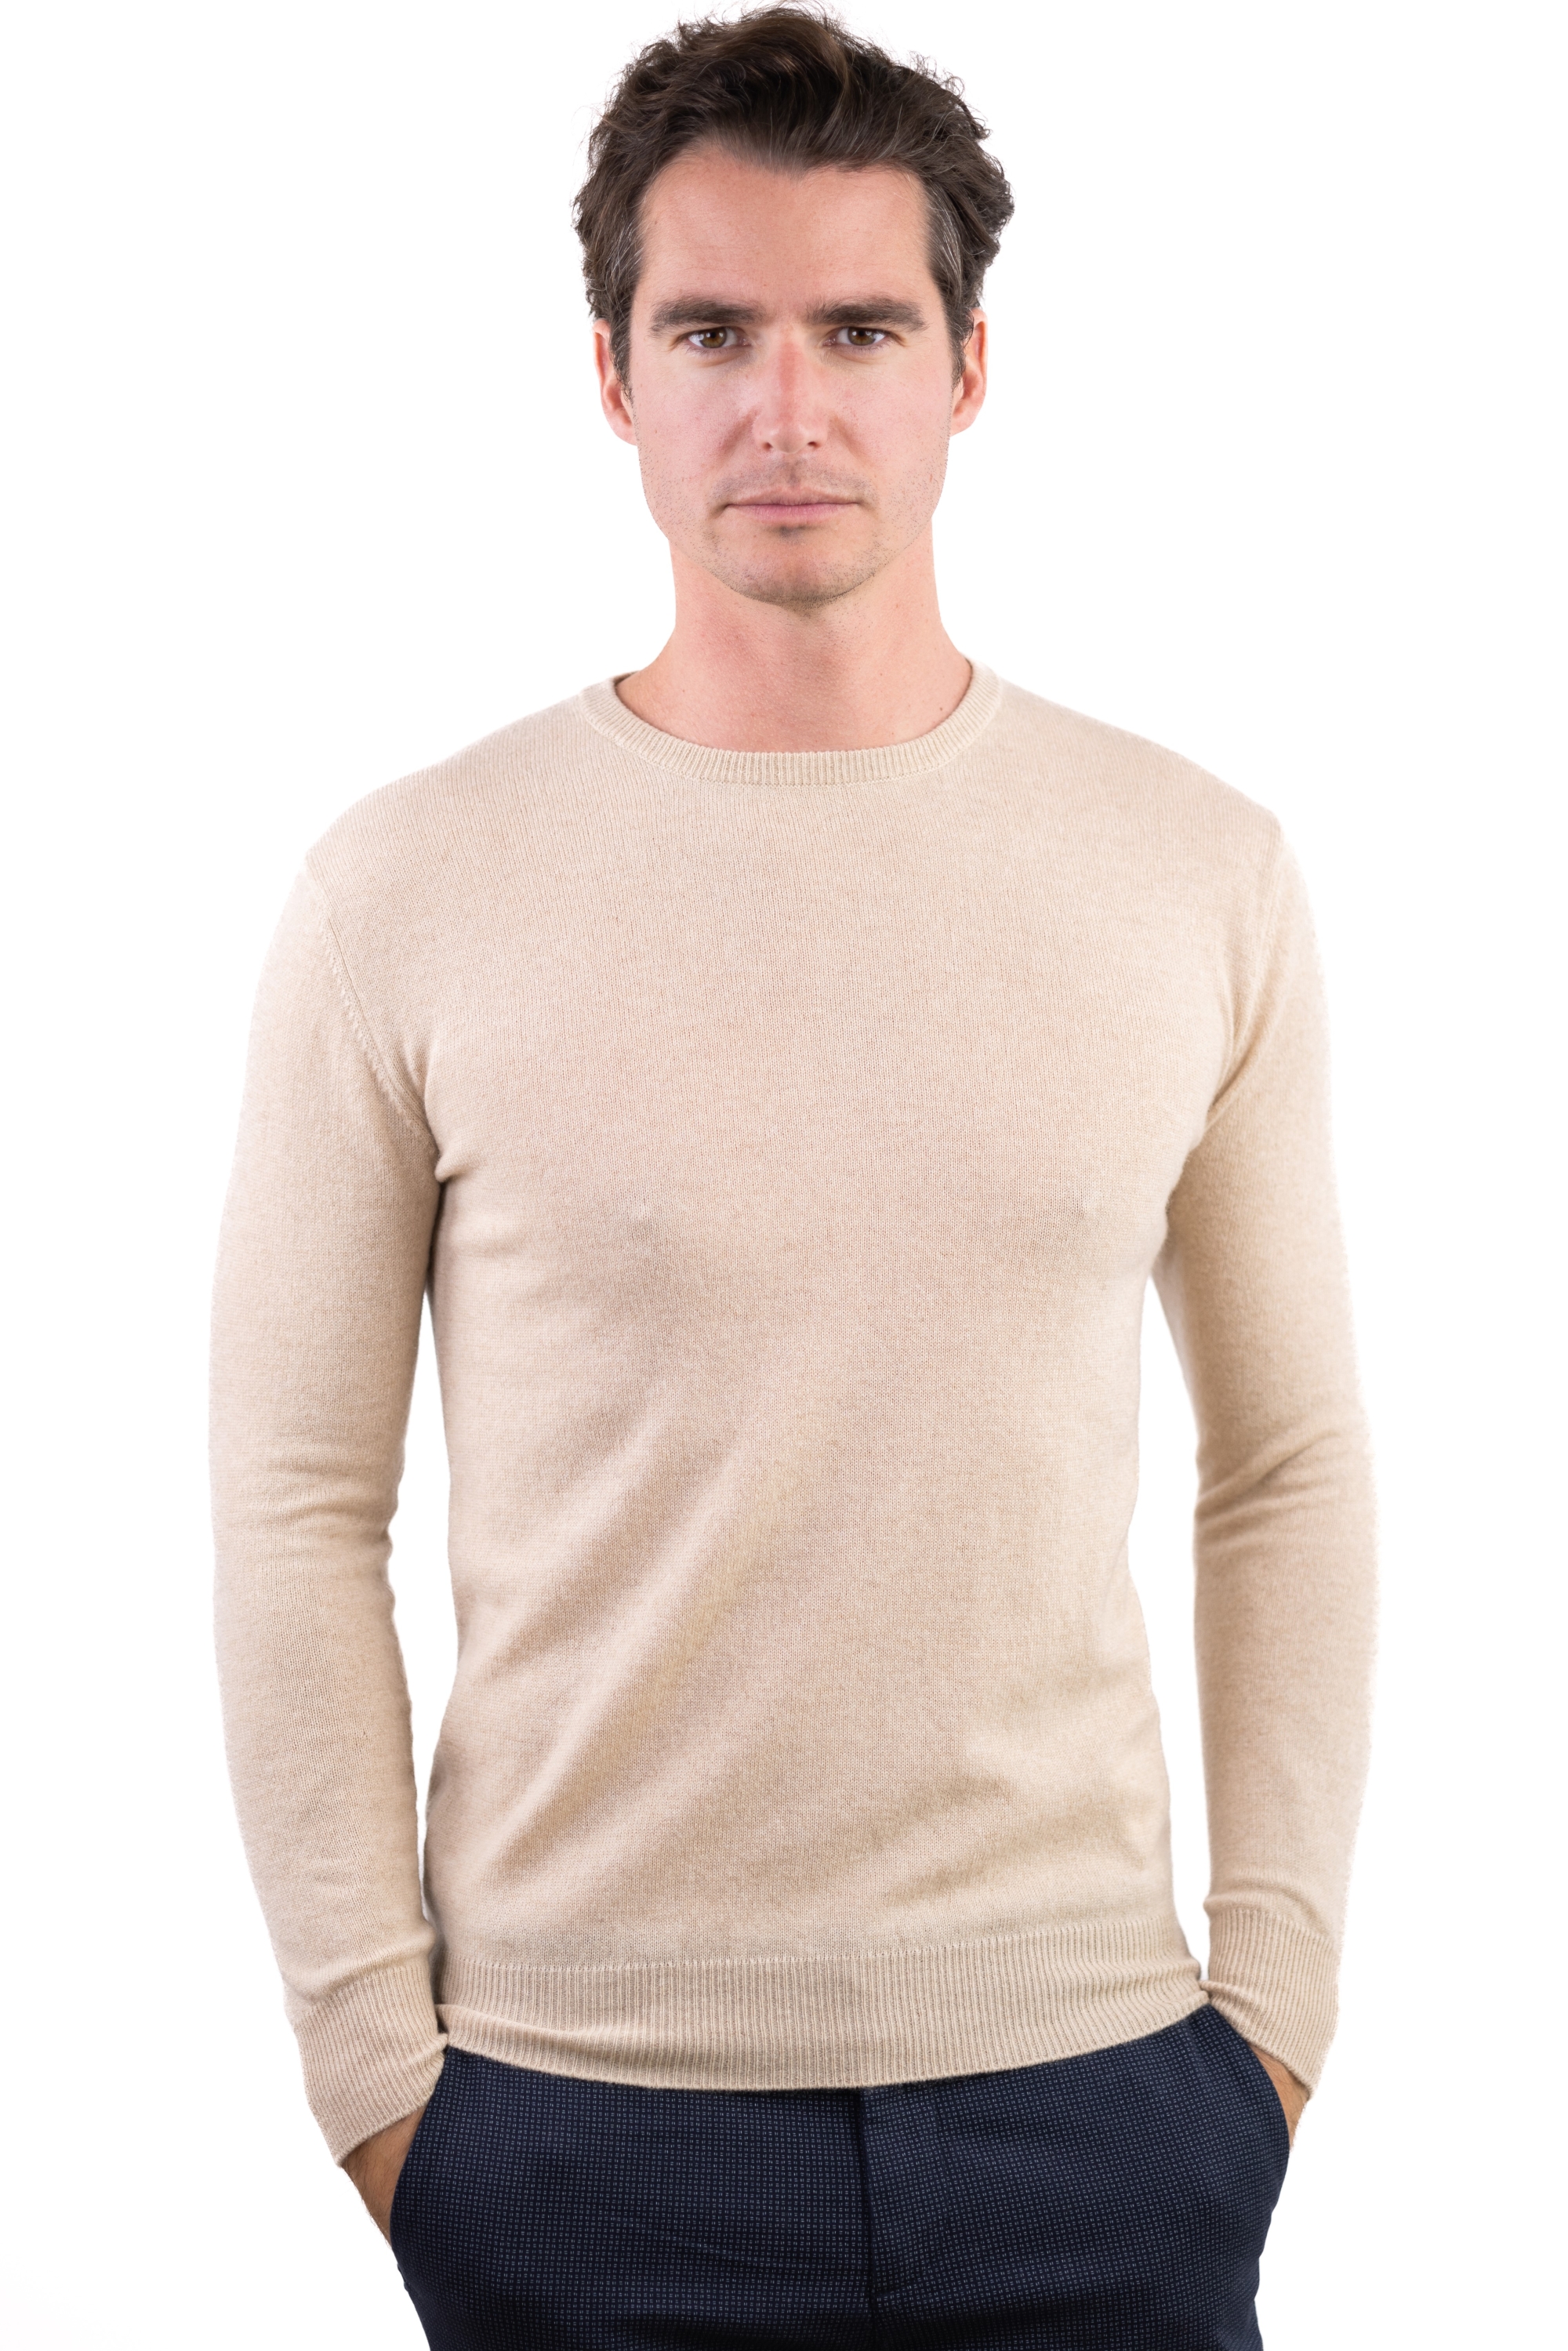 Cashmere kaschmir pullover herren rundhals keaton natural beige 2xl